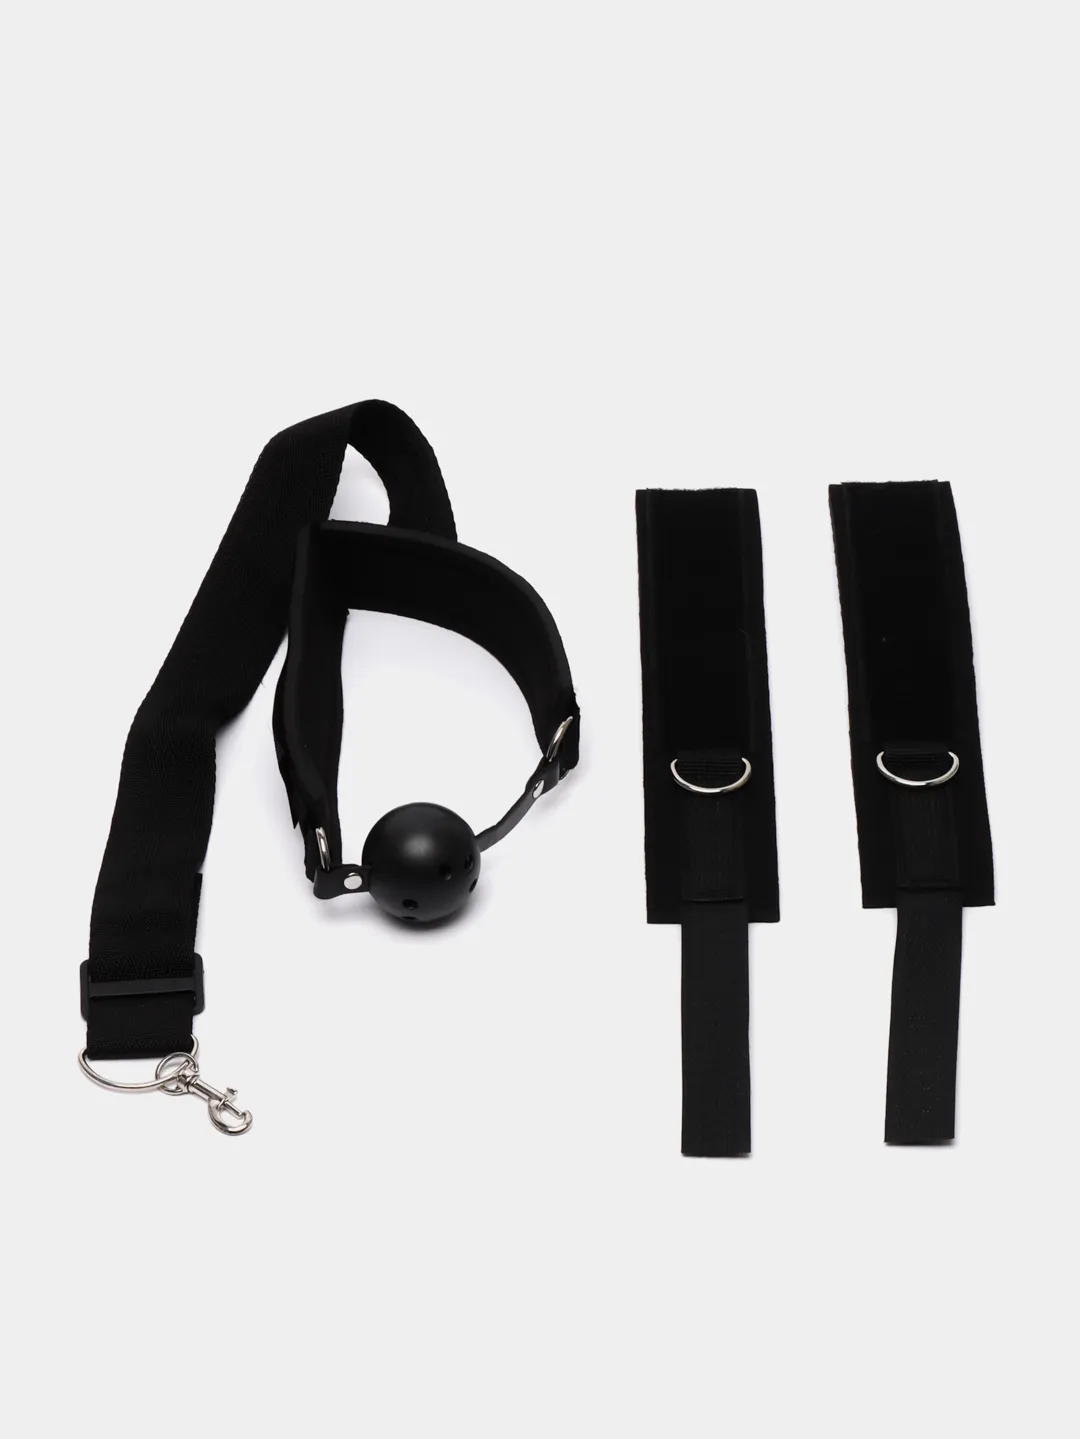 Бондаж для связывания рук и шеи с кляпом, ошейник и наручники БДСМ купить  по цене 189 ₽ в интернет-магазине KazanExpress